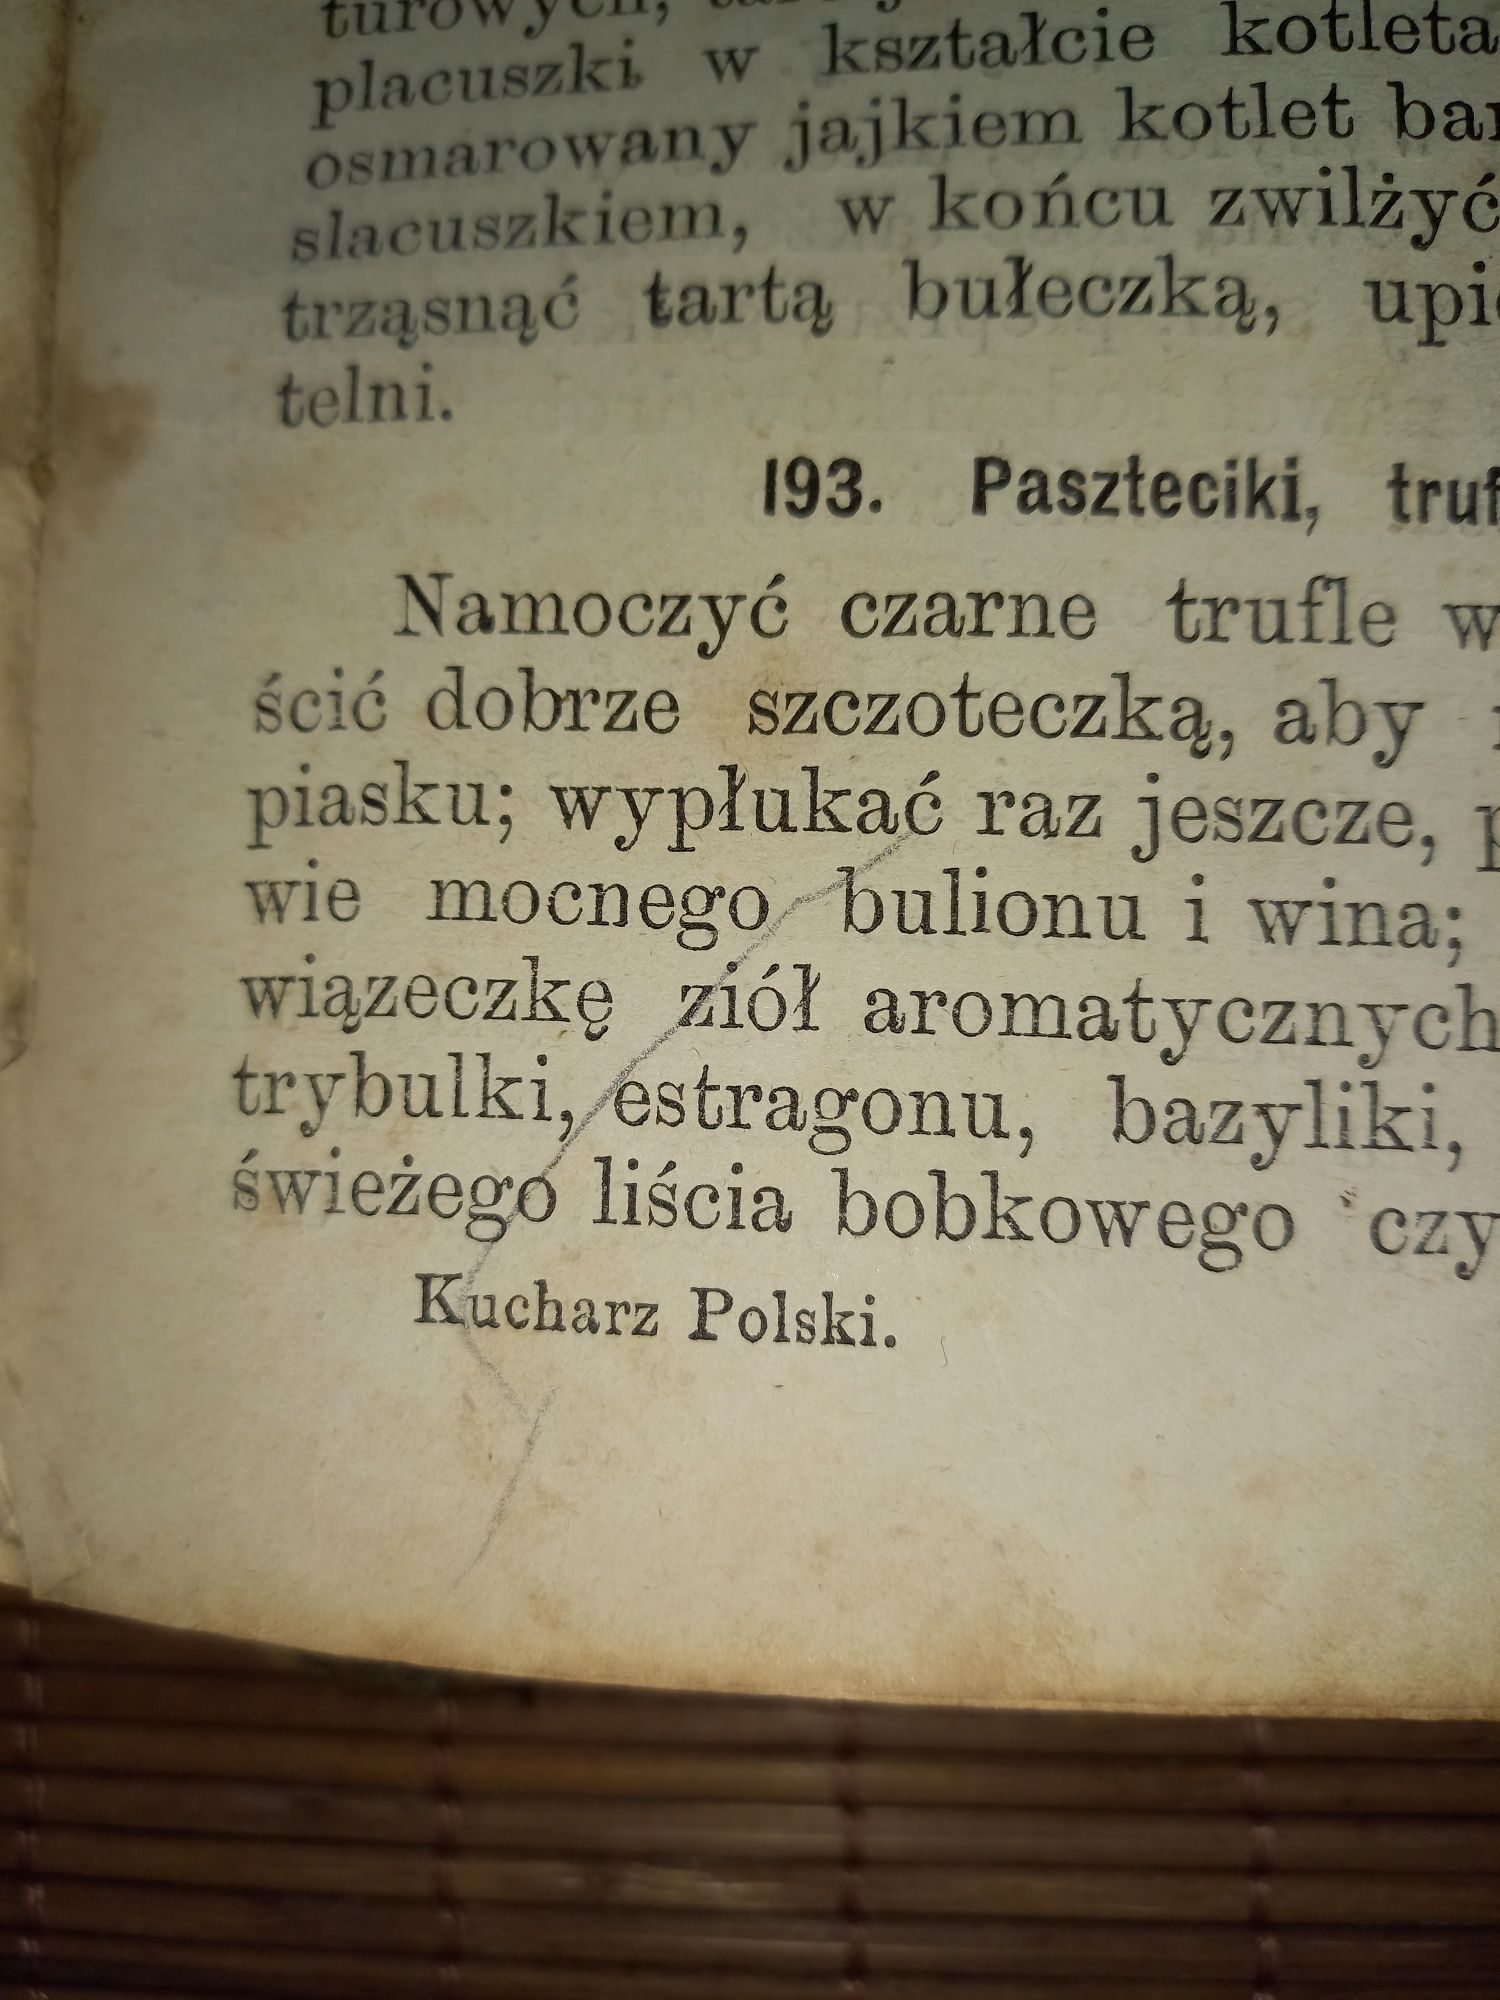 Książka "Kucharz polski jaki być powinien"B.Leśniewska